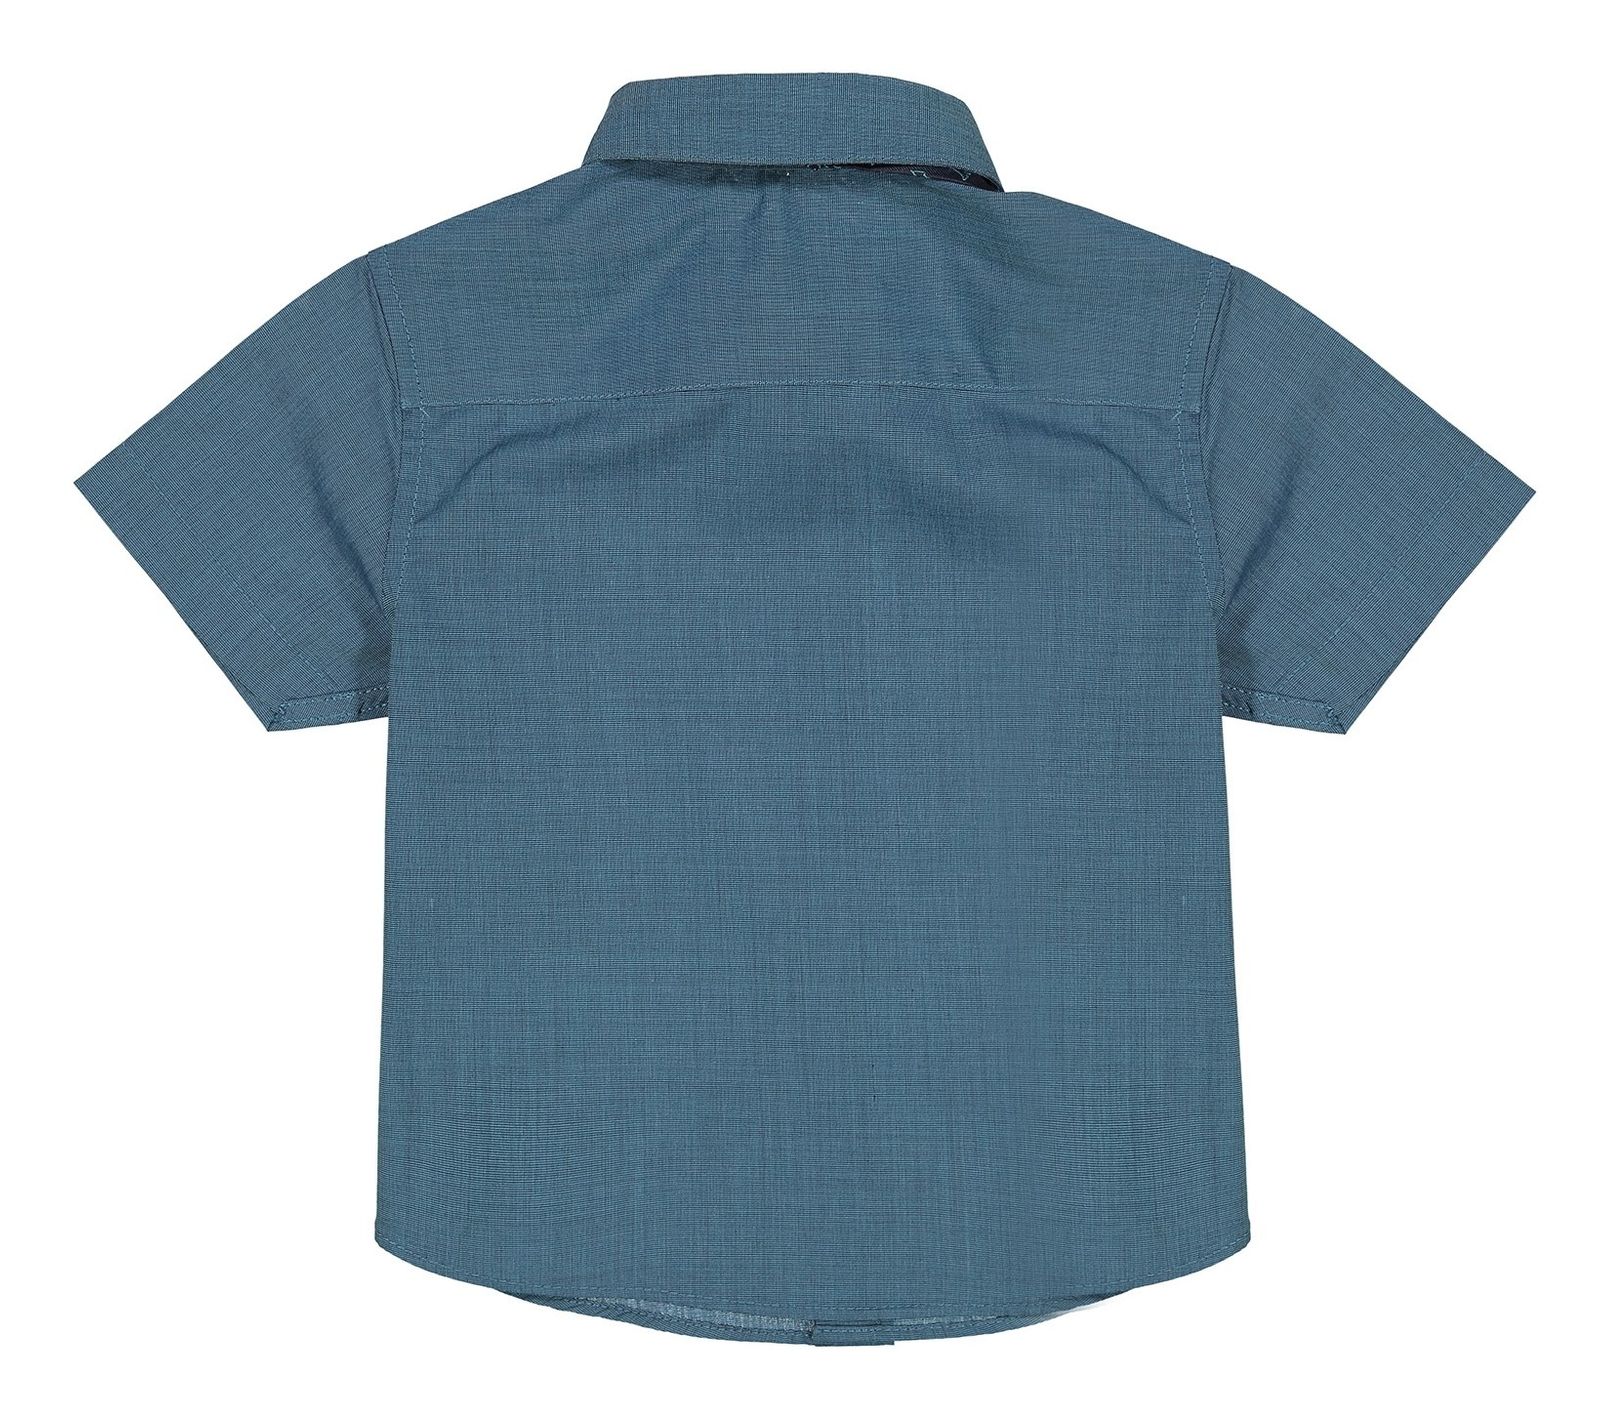 پیراهن آستین کوتاه پسرانه - بلوزو - سبز   - 3